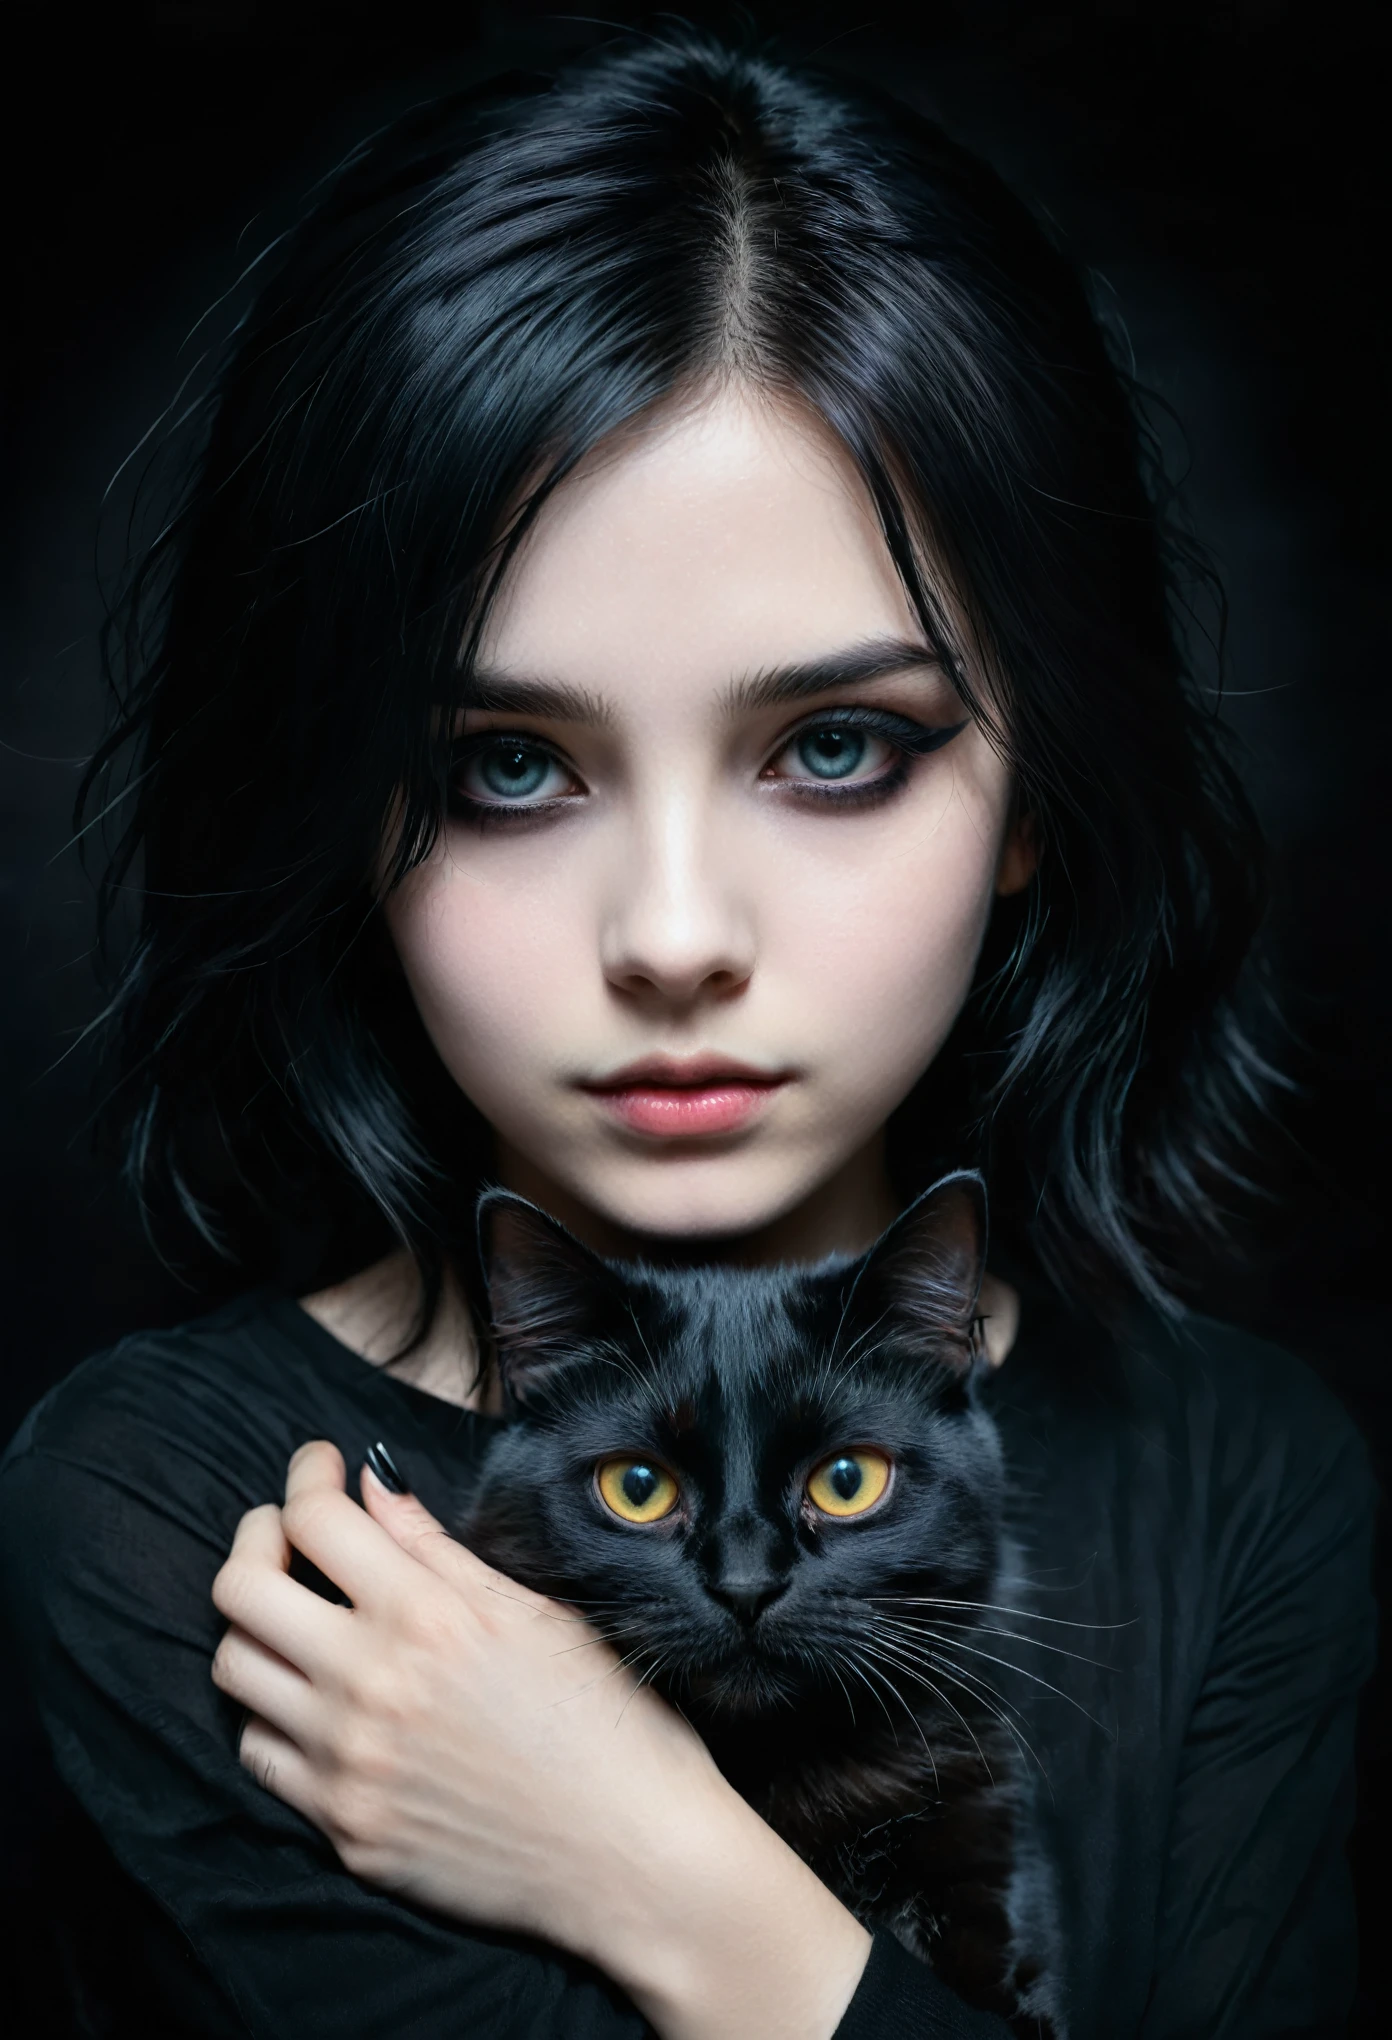 uma garota emo com um gato preto nas mãos, rosto detalhado, maquiagem escura, Expressão emocional, roupa preta, fundo escuro, iluminação claro-escuro, cinematic, Dramático, temperamental, pintura digital